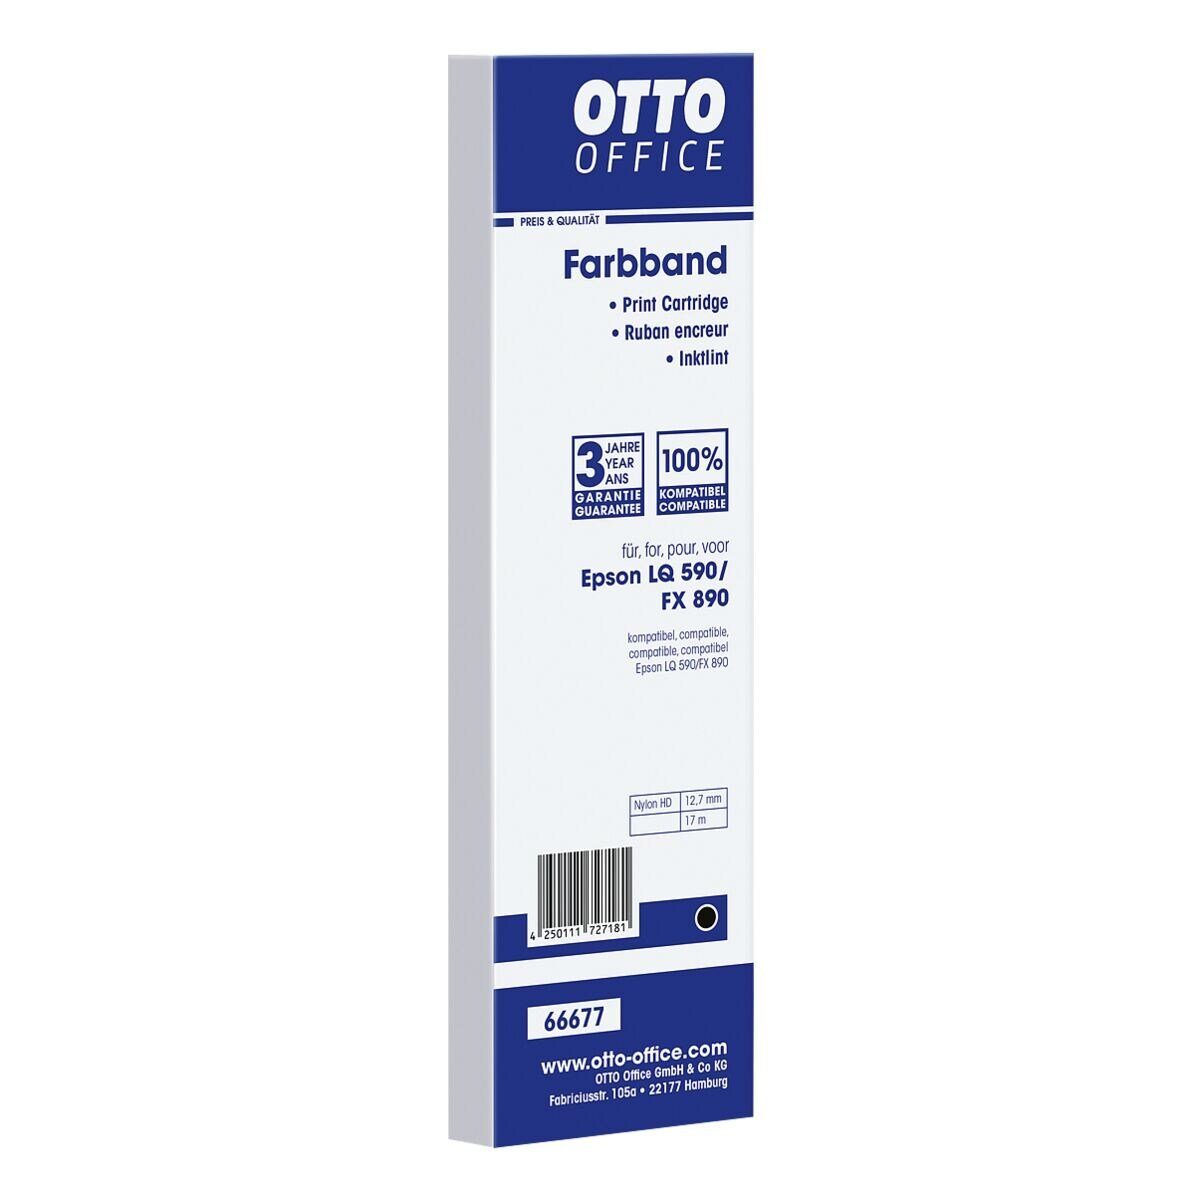 Otto Office  Office Druckerband S015337, Farbband für Nadeldrucker, schwarz